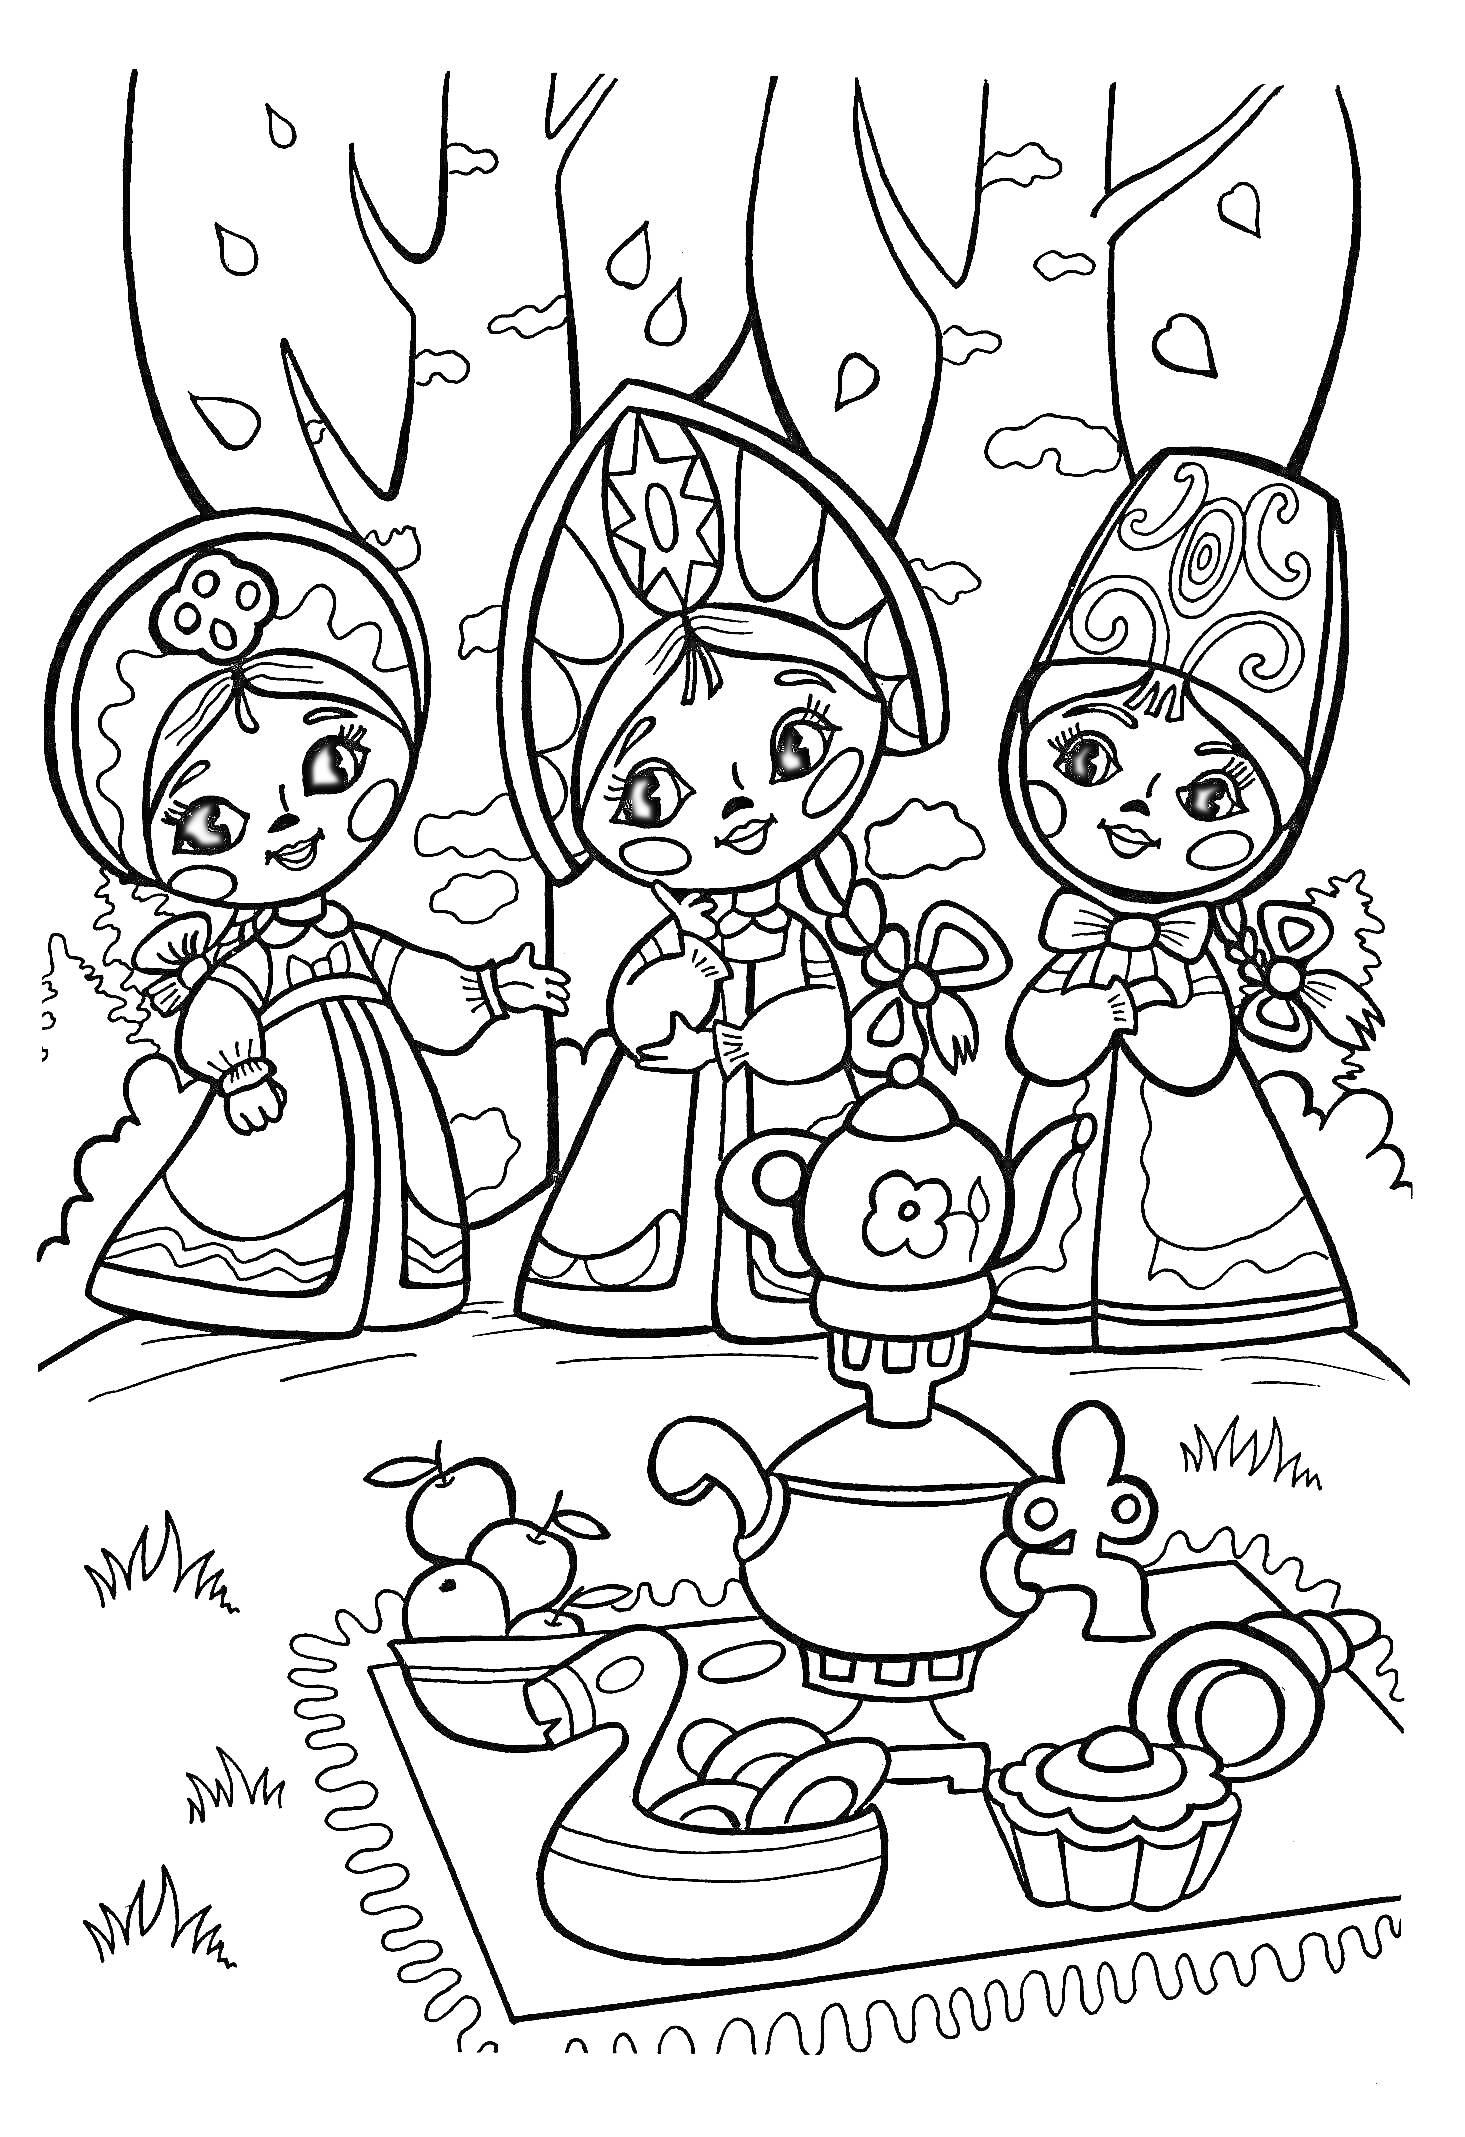 Три девочки в традиционных русских нарядах и самовар на пикнике